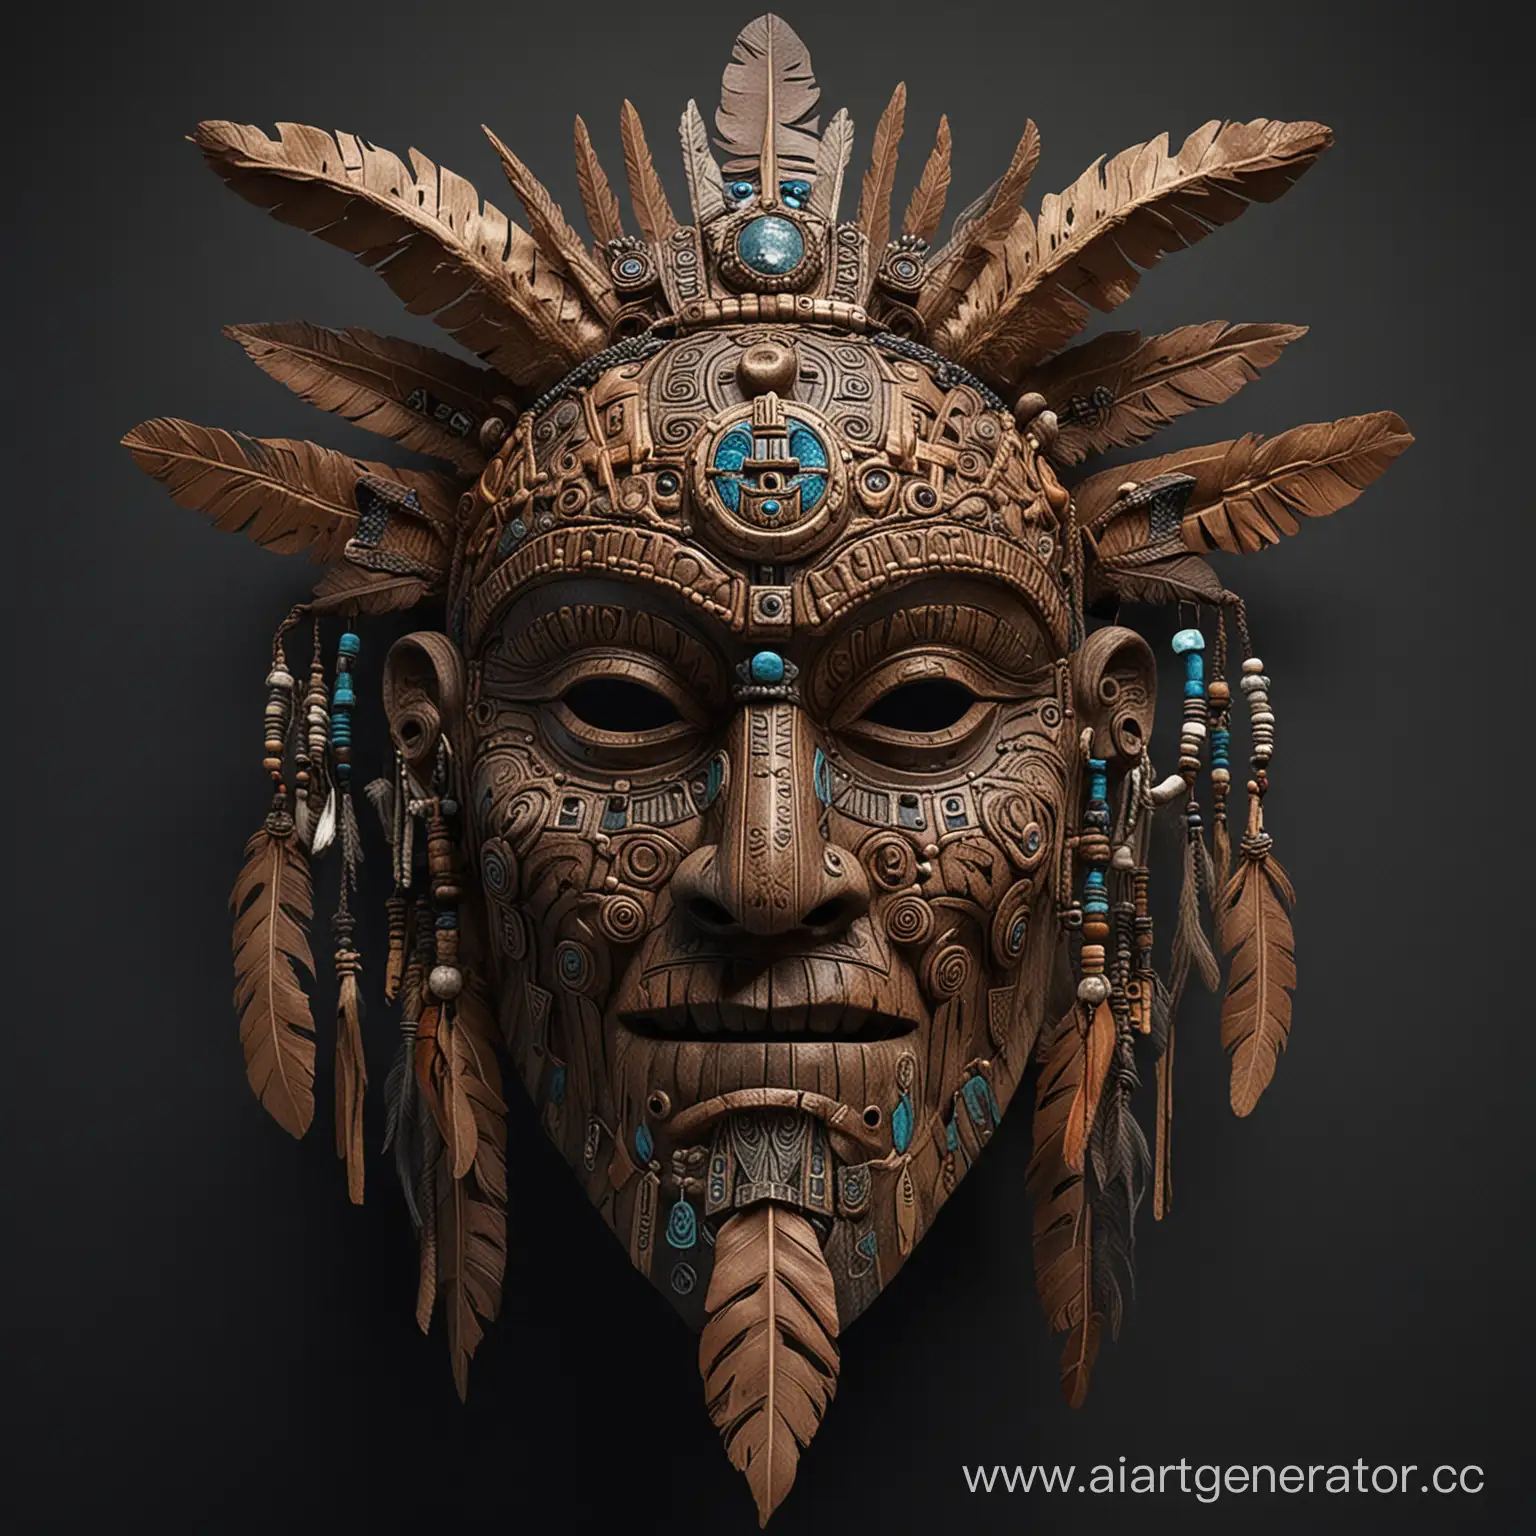 Маска шамана Хранитель ночи, символичная, аутентичная , сложно выполненная, со множеством деталей и фактур